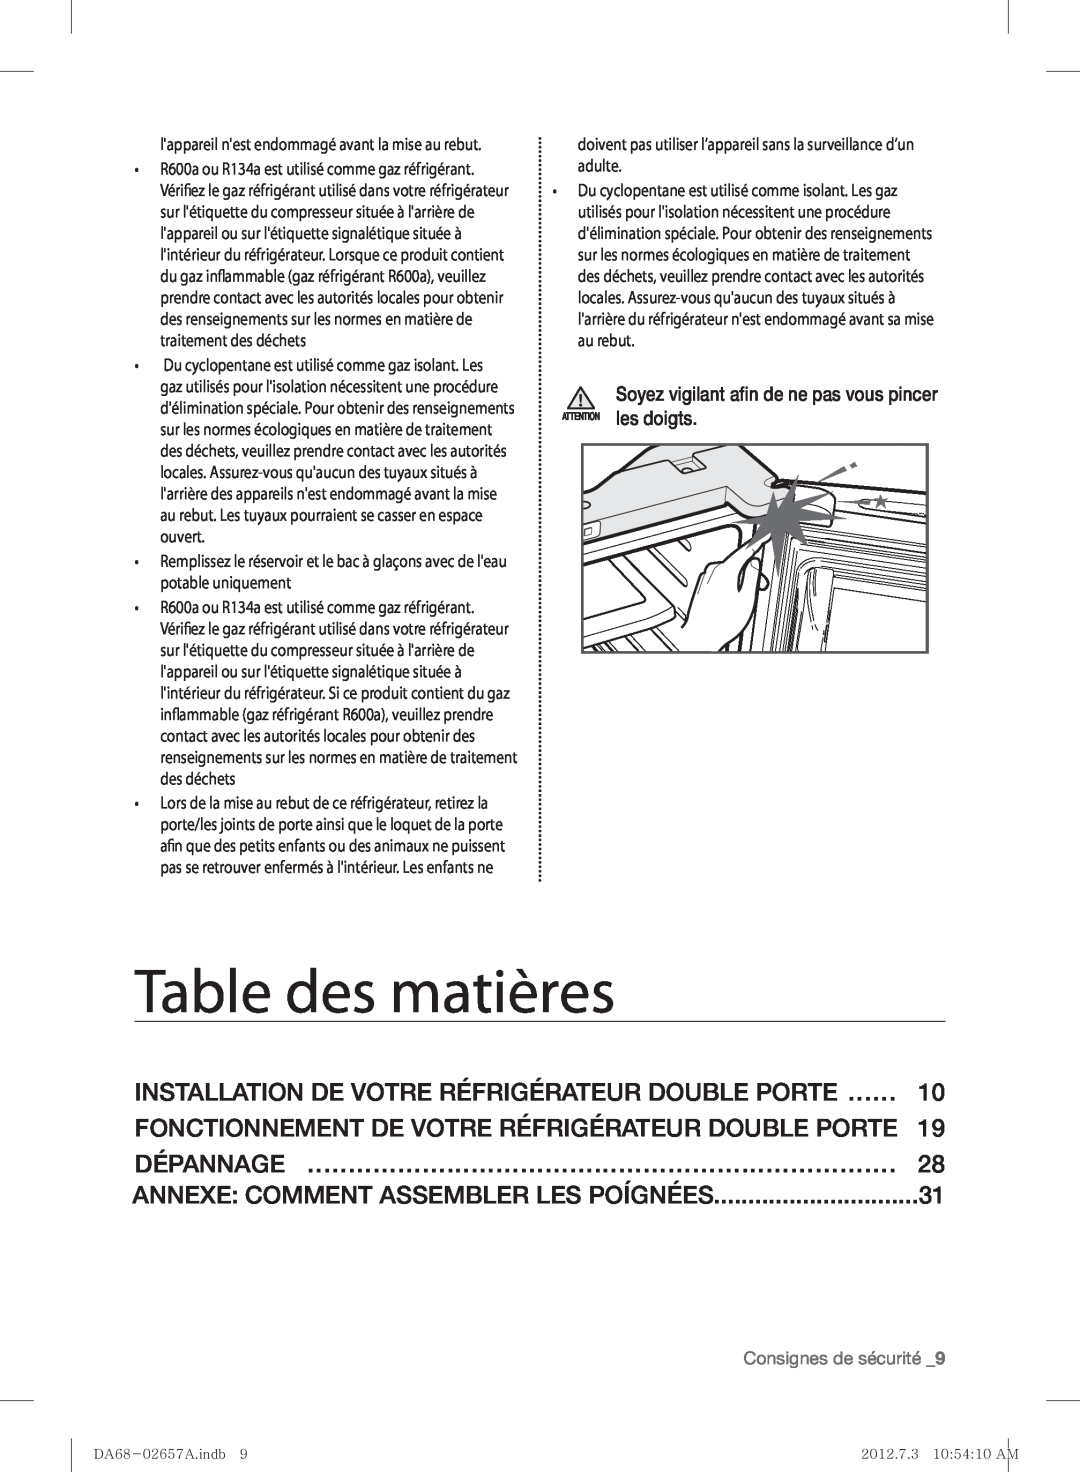 Samsung RF221NCTABC Table des matières, Installation De Votre Réfrigérateur Double Porte ……, Consignes de sécurité 